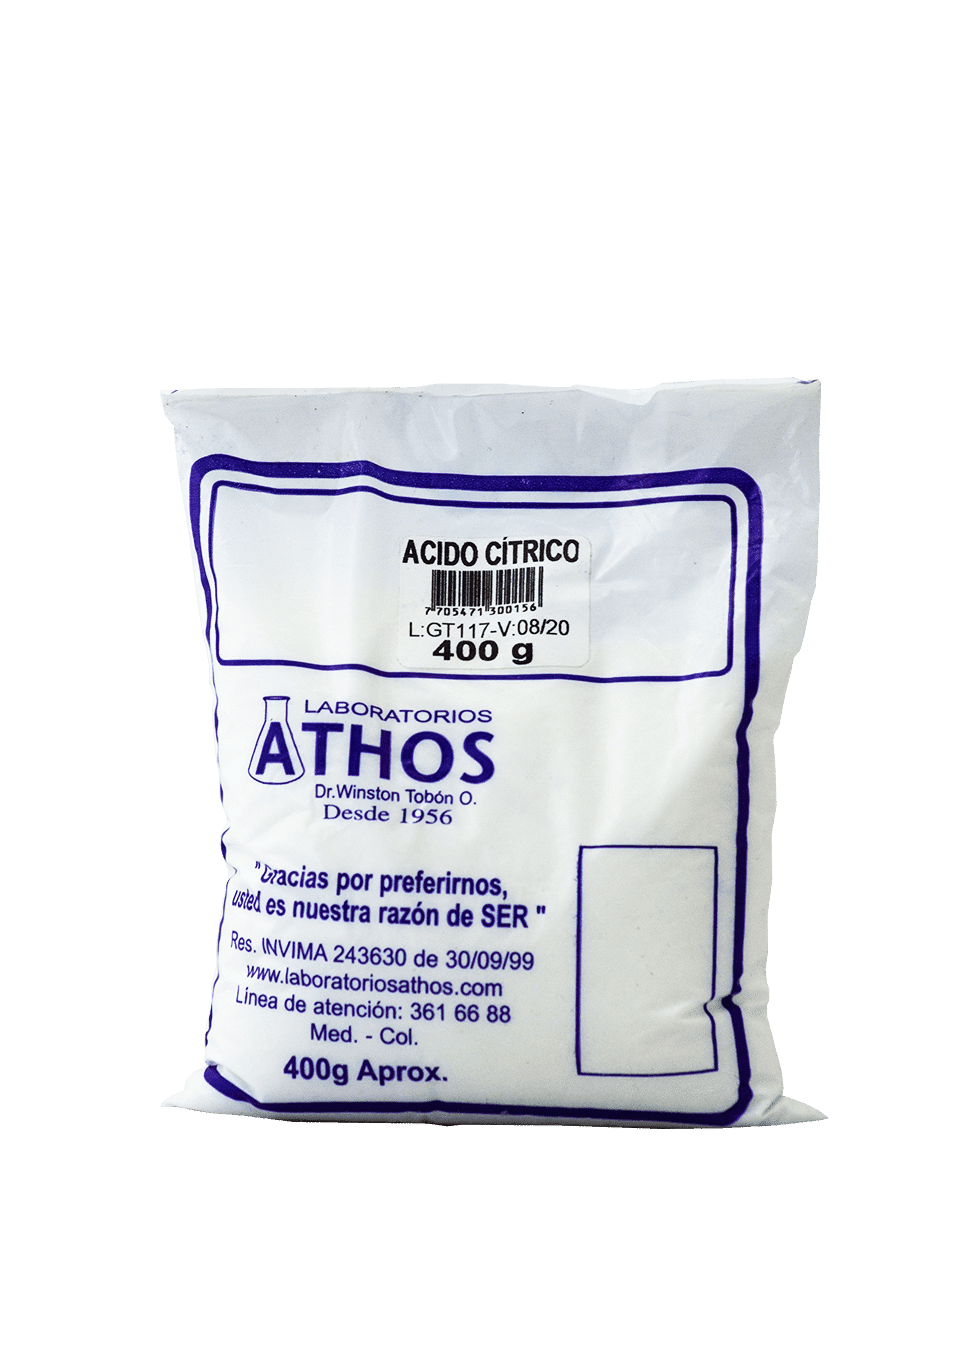 recomendaciones del consumo de ácido cítrico